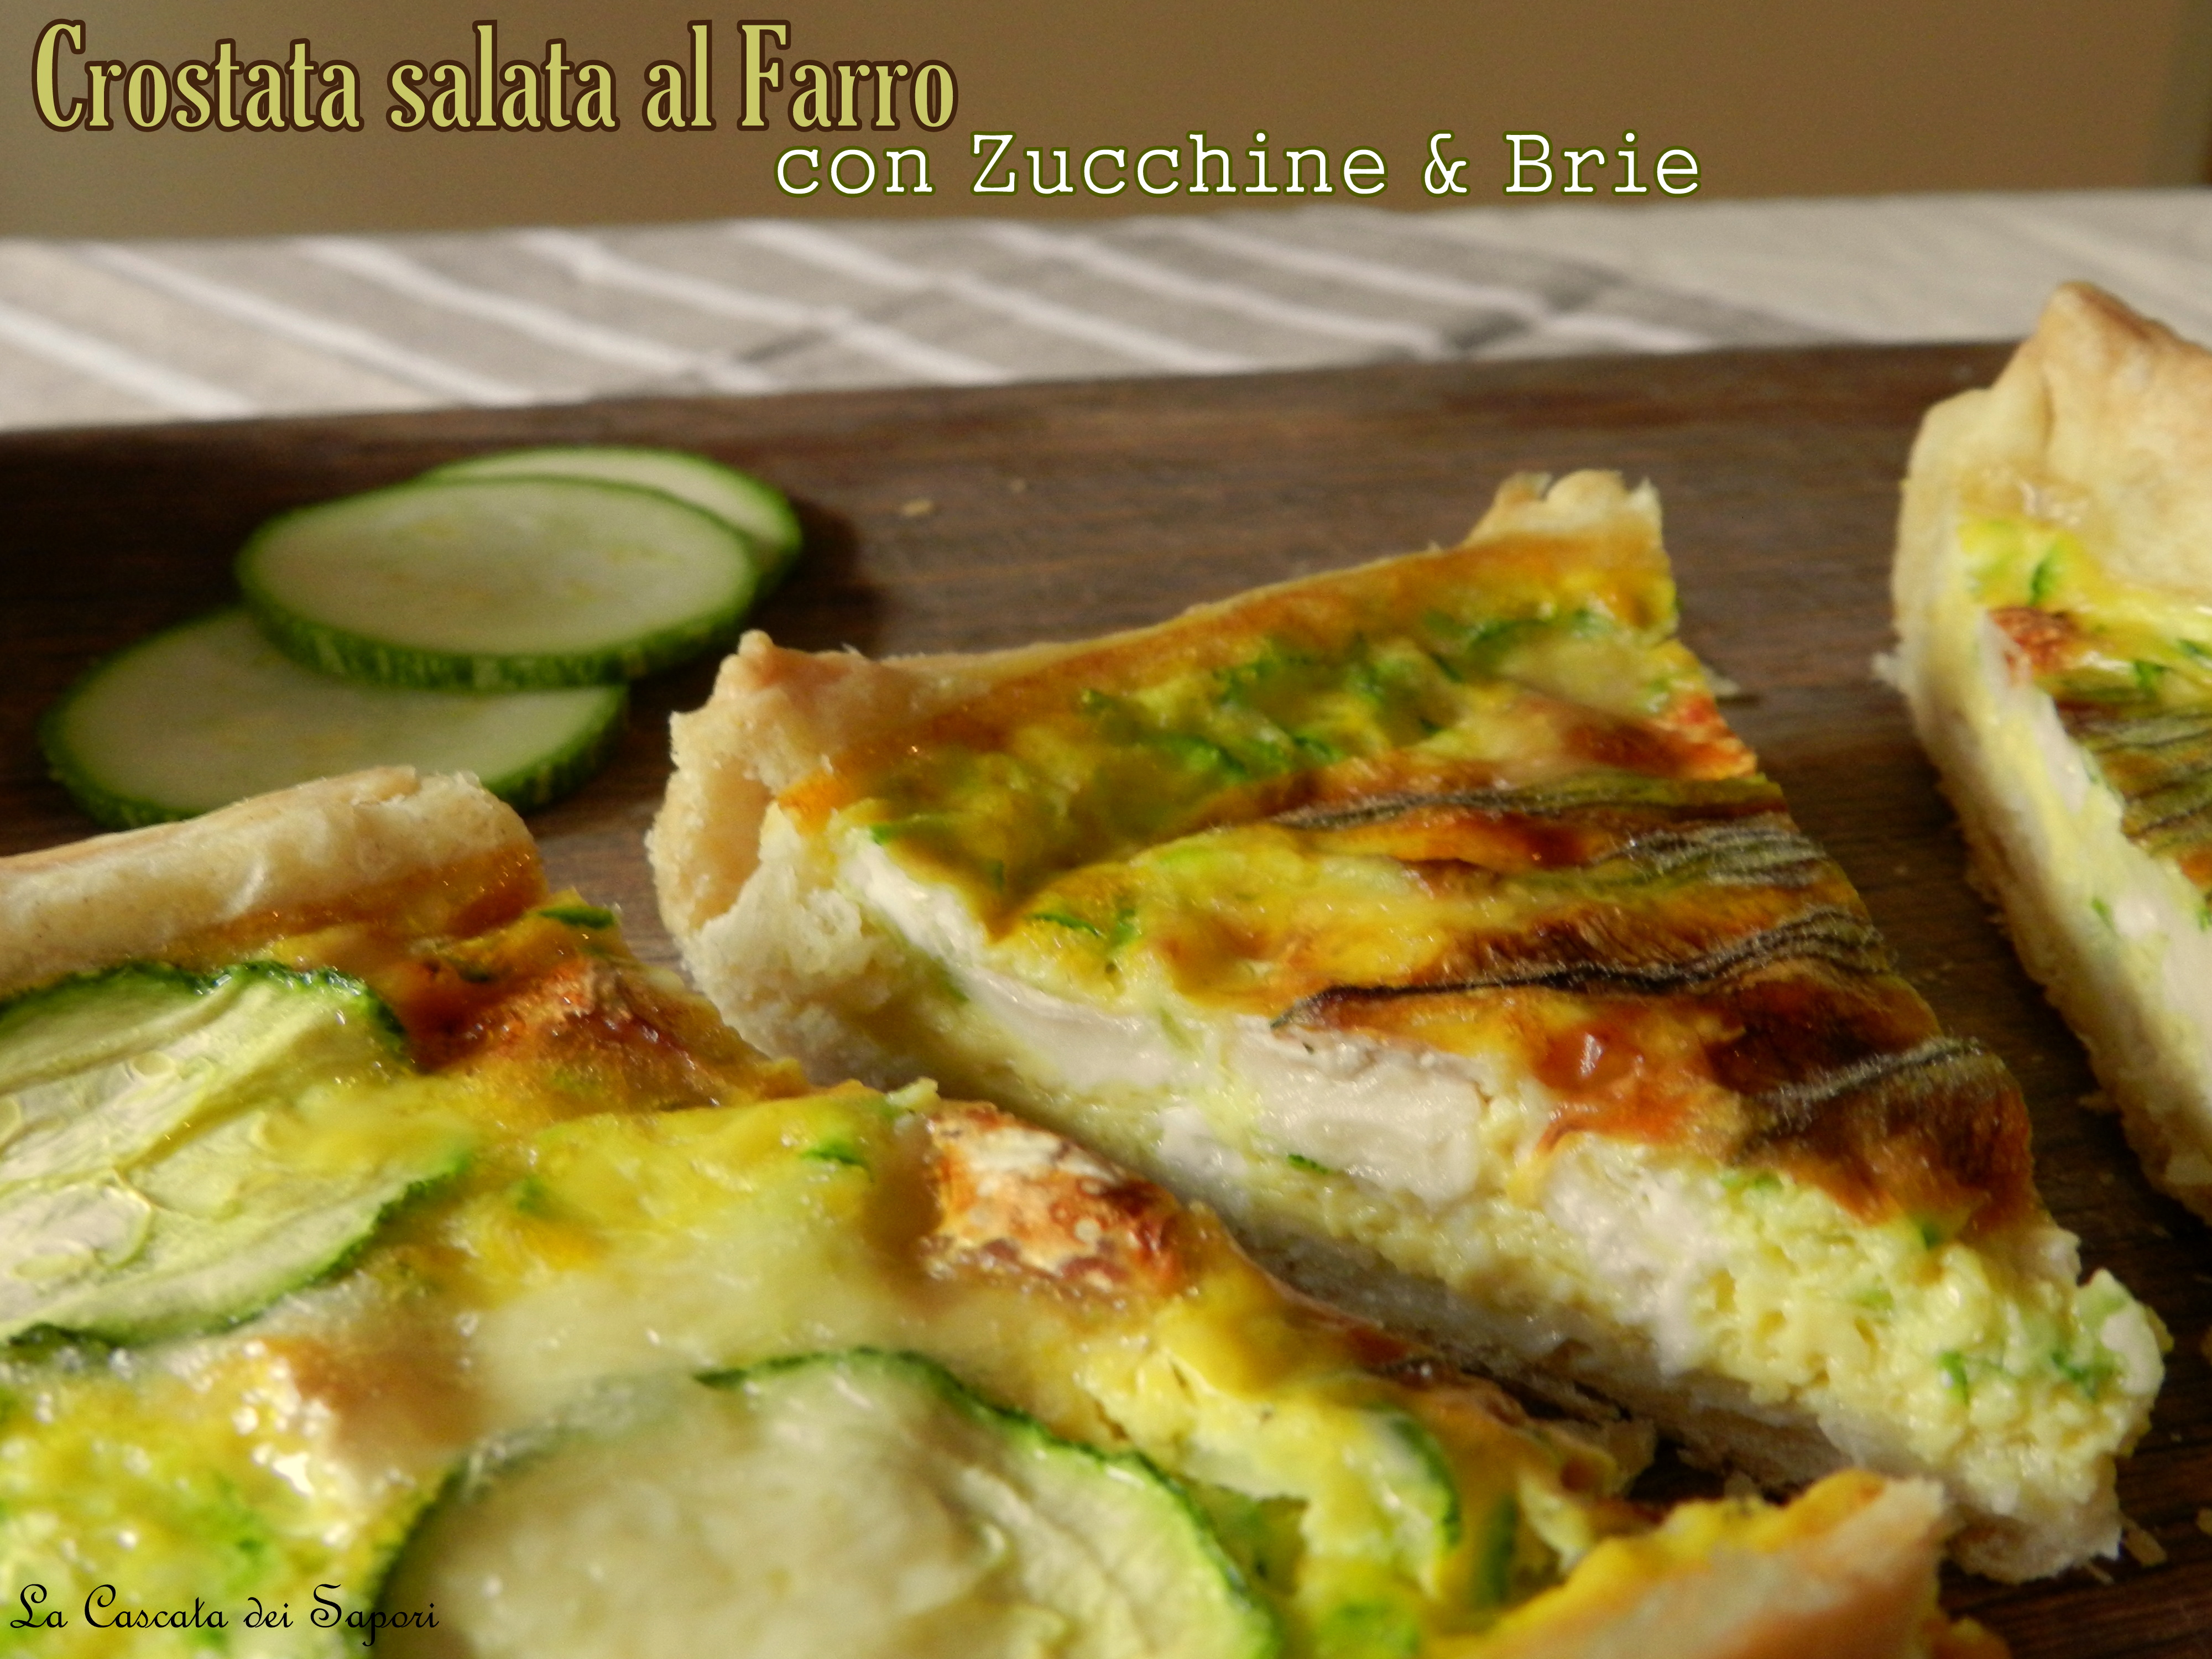 Crostata salata al Farro con Zucchine & Brie danese